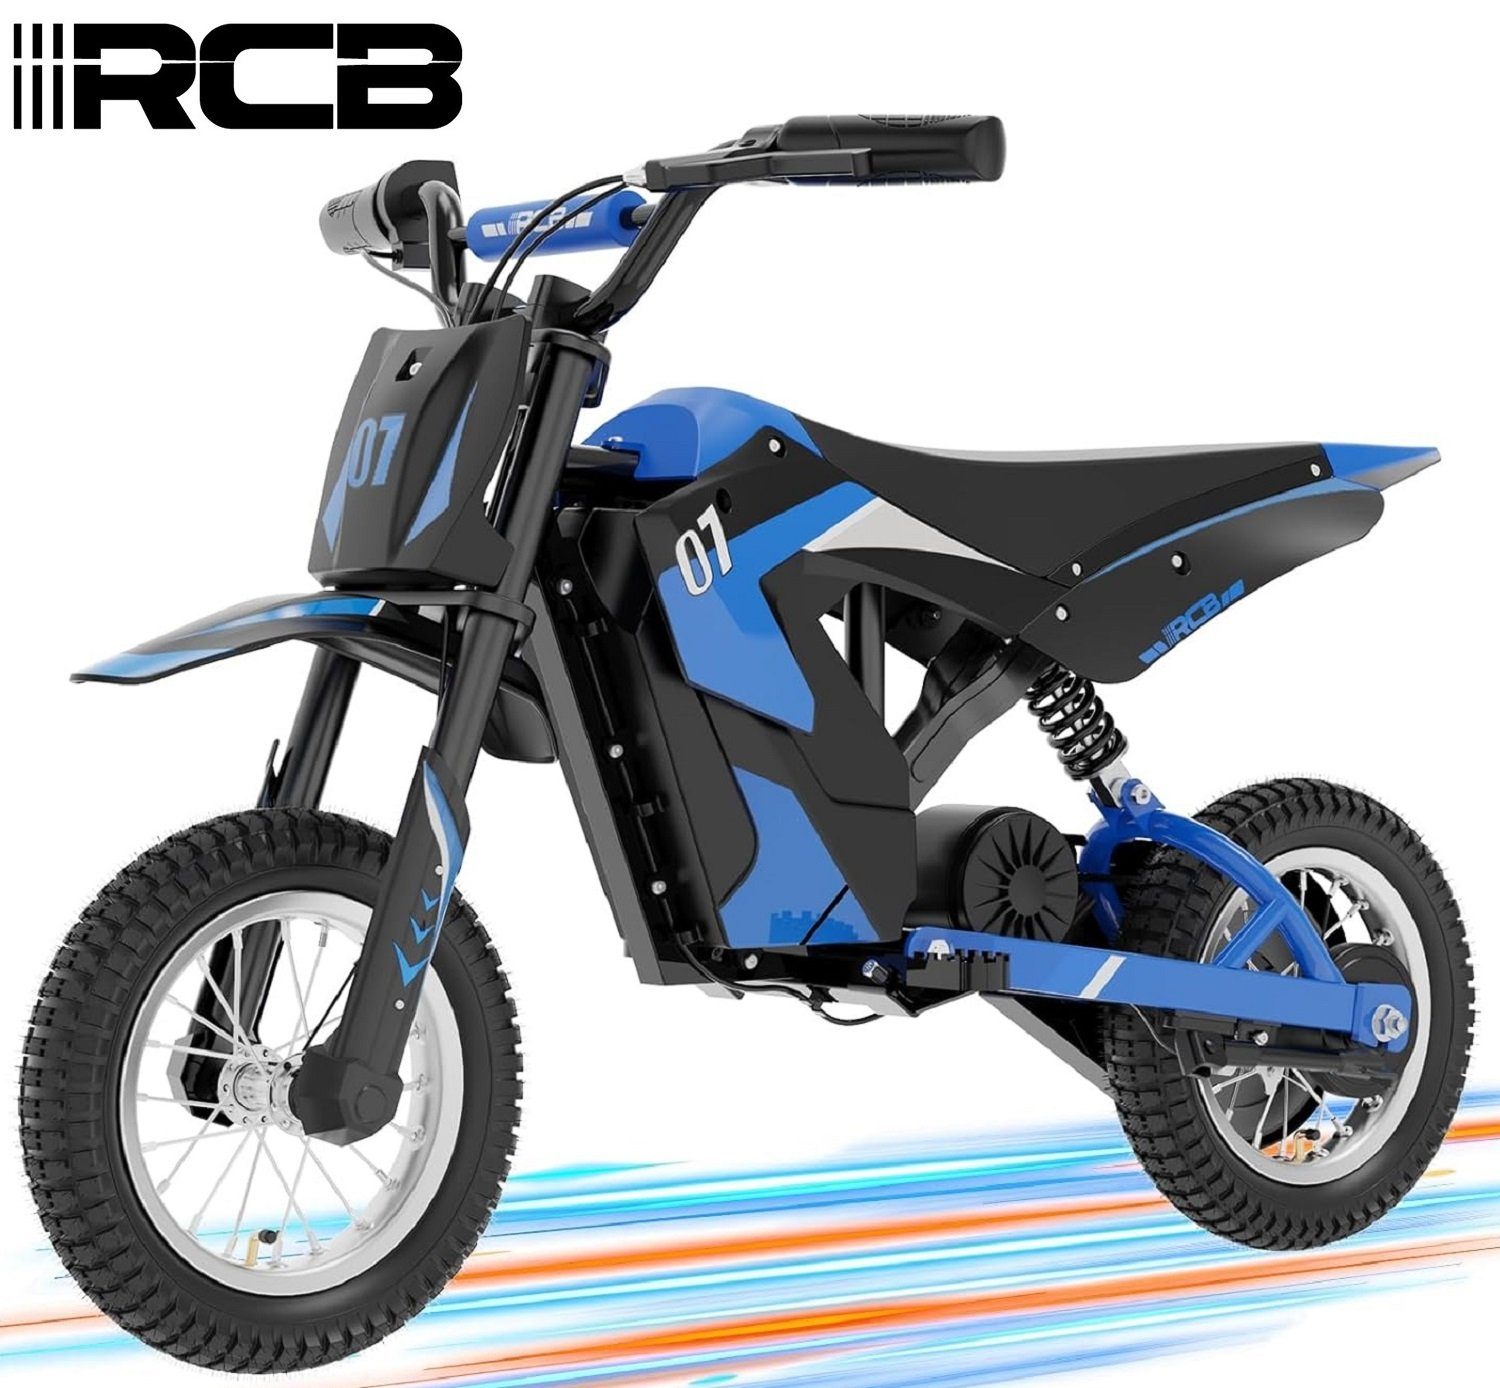 15km, 25km/h, Elektro-Kindermotorrad Max Reichweite 12" blau 3 Geschwindigkeitsmodus, Luftreifen RCB